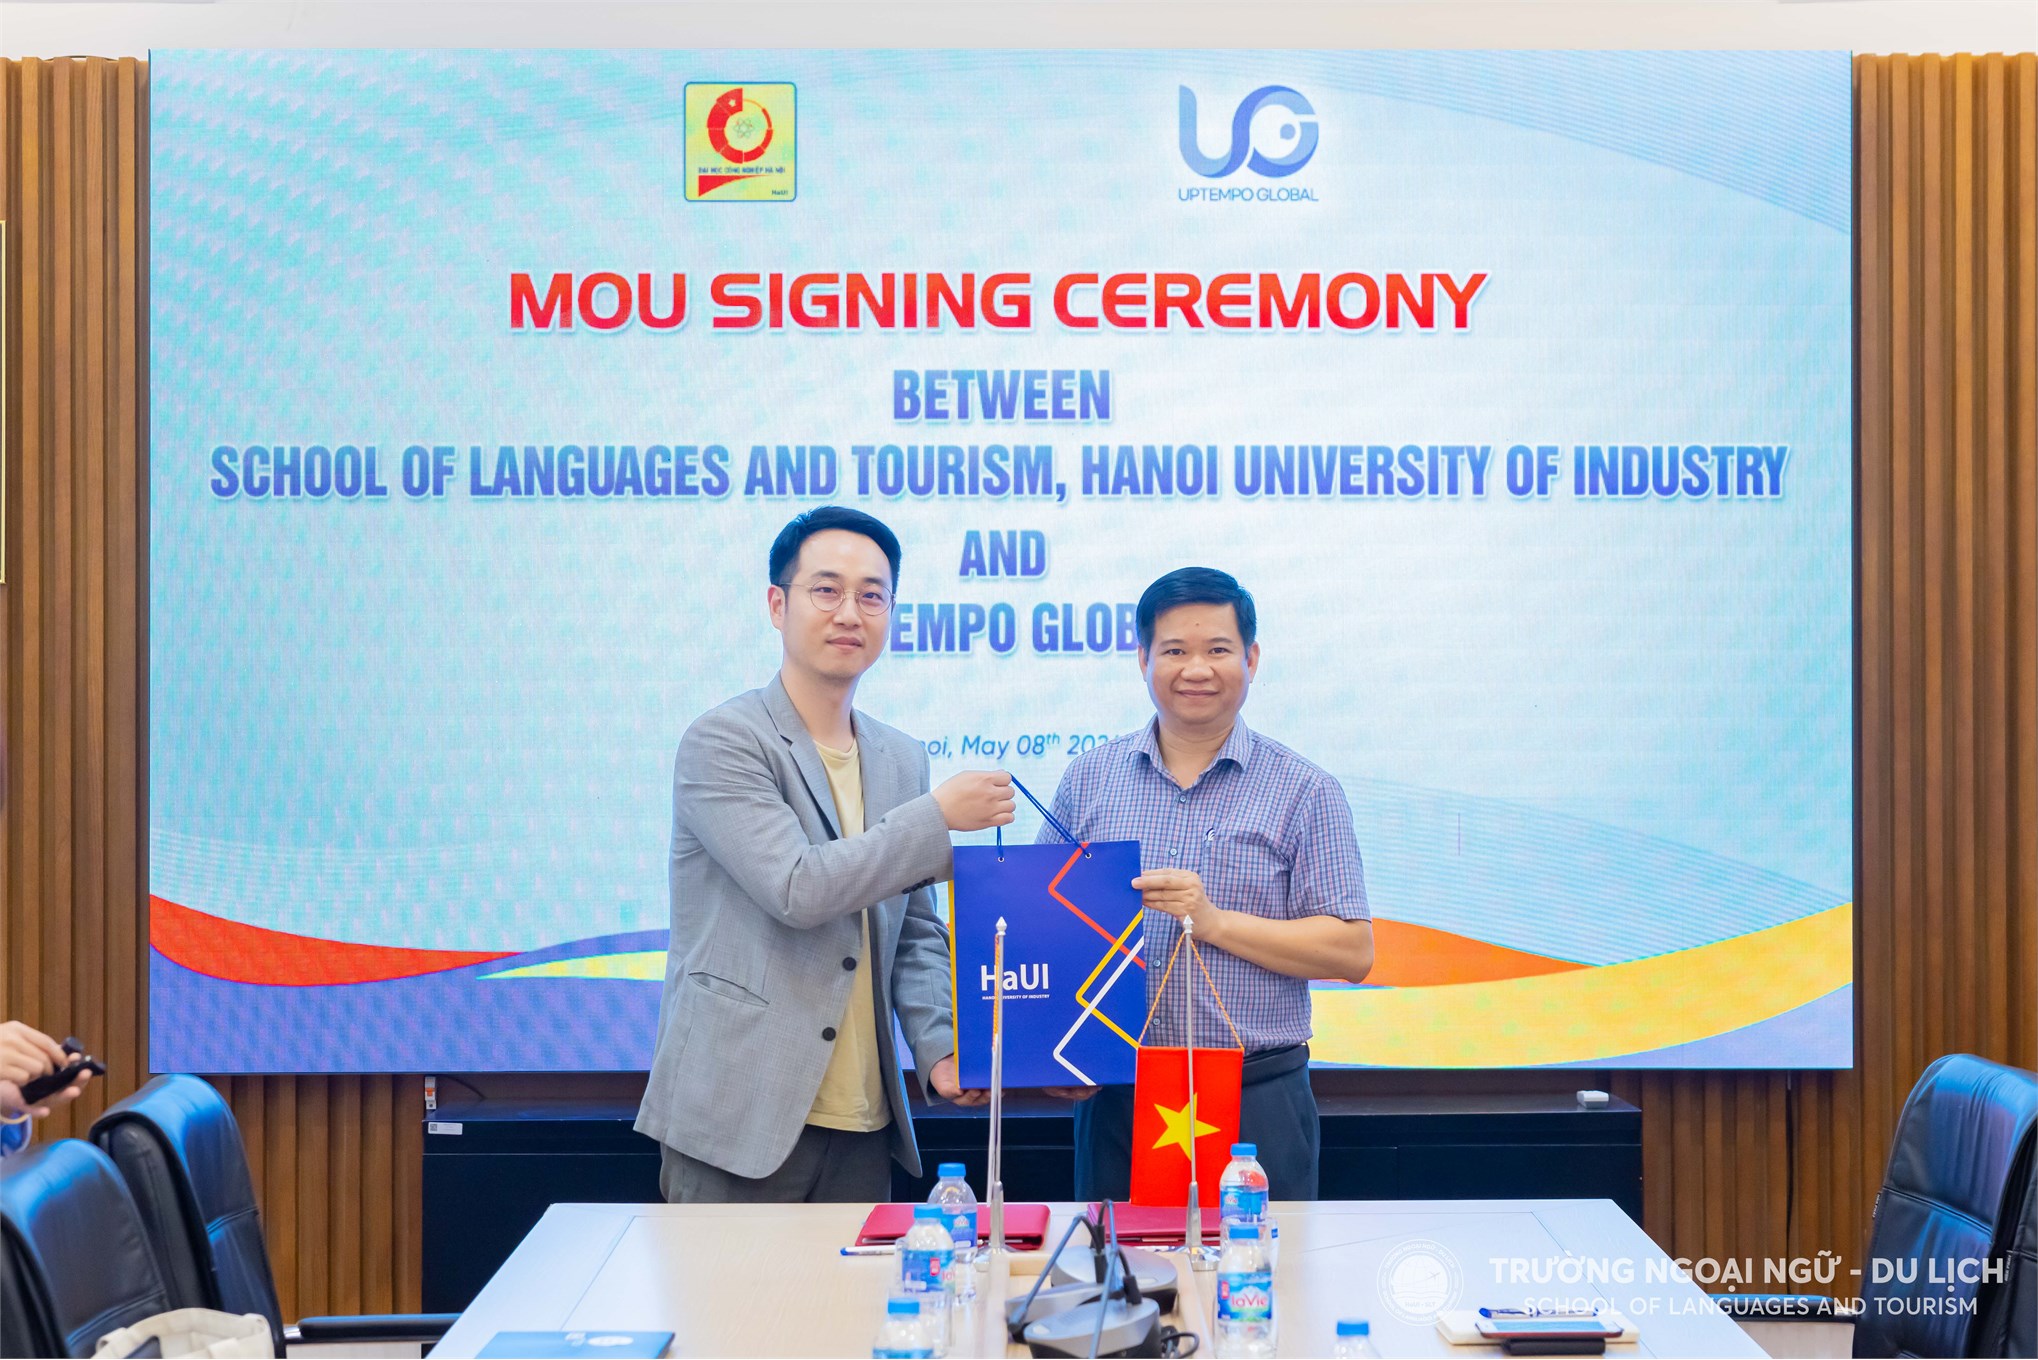 Uptempo Global đồng hành cùng Trường Ngoại ngữ - Du lịch, Đại học Công nghiệp Hà Nội nâng cao chất lượng giáo dục đào tạo tiếng Hàn Quốc